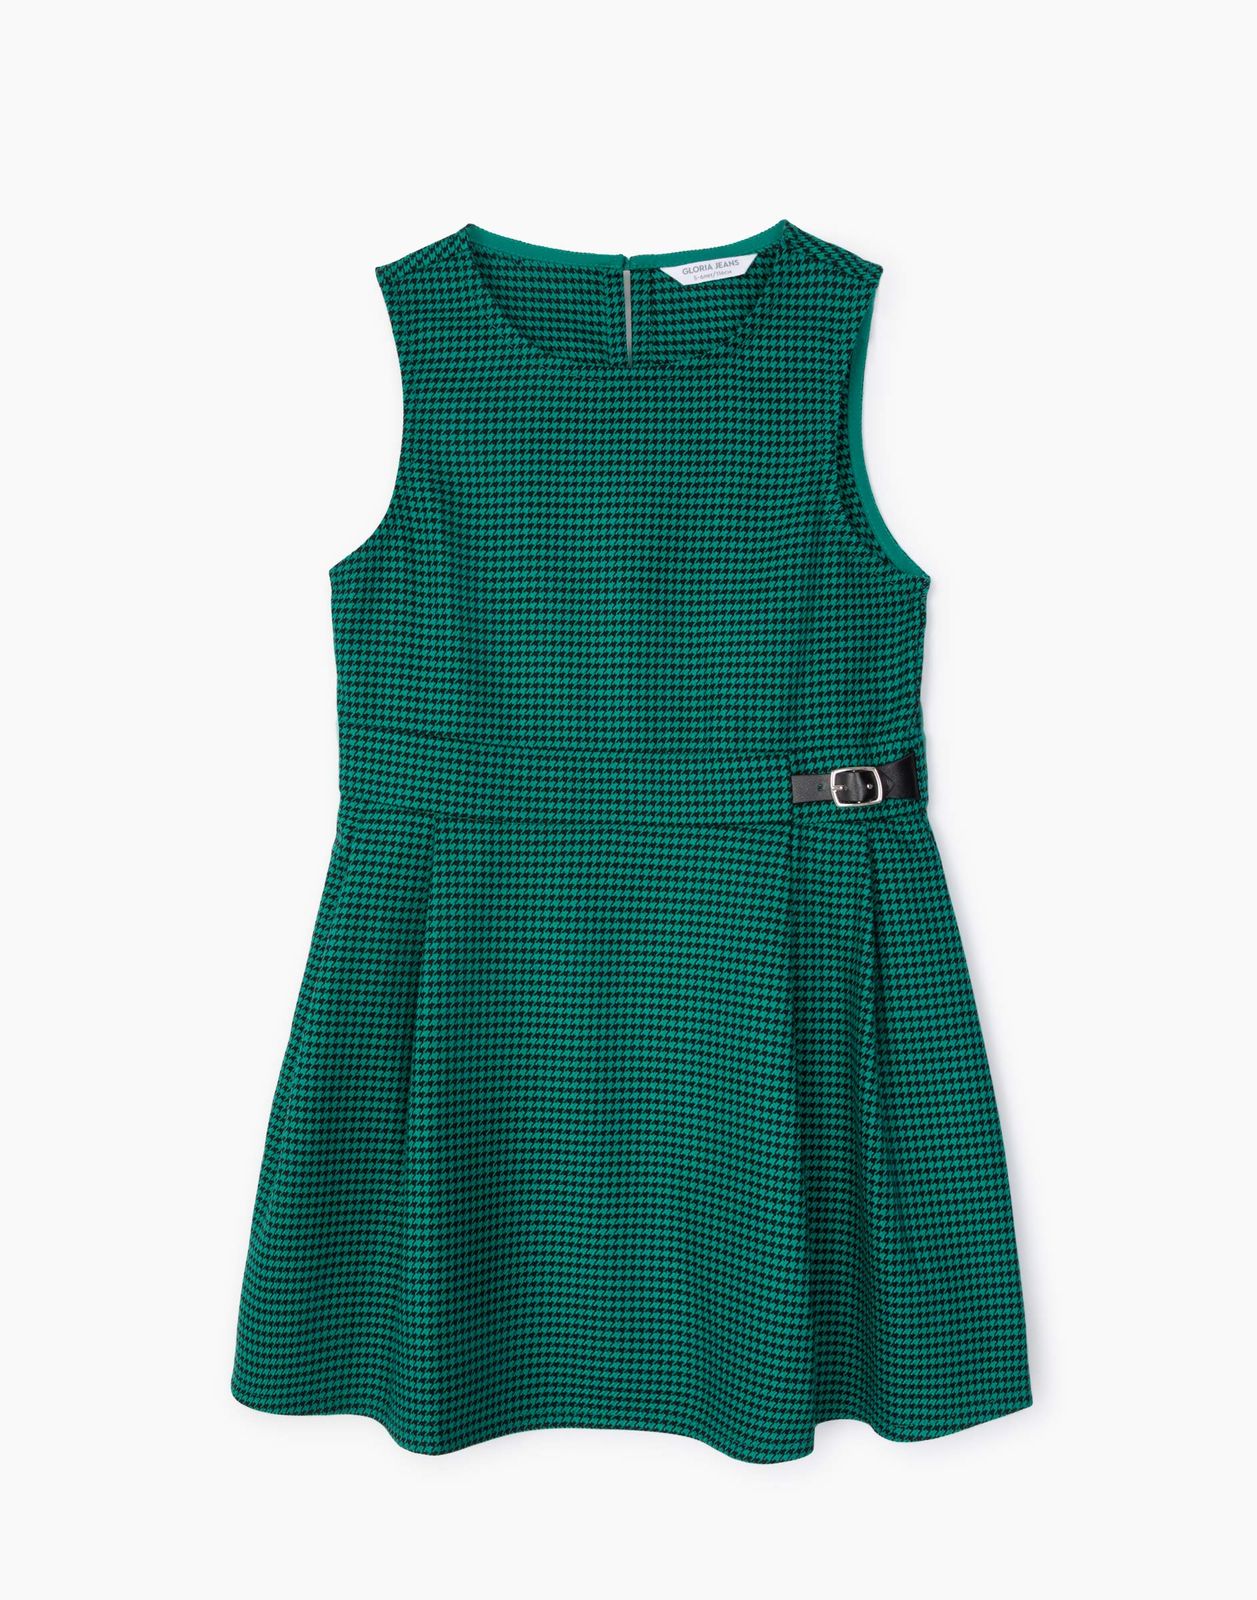 Платье детское Gloria Jeans GDR027840, зеленый/черный, 122